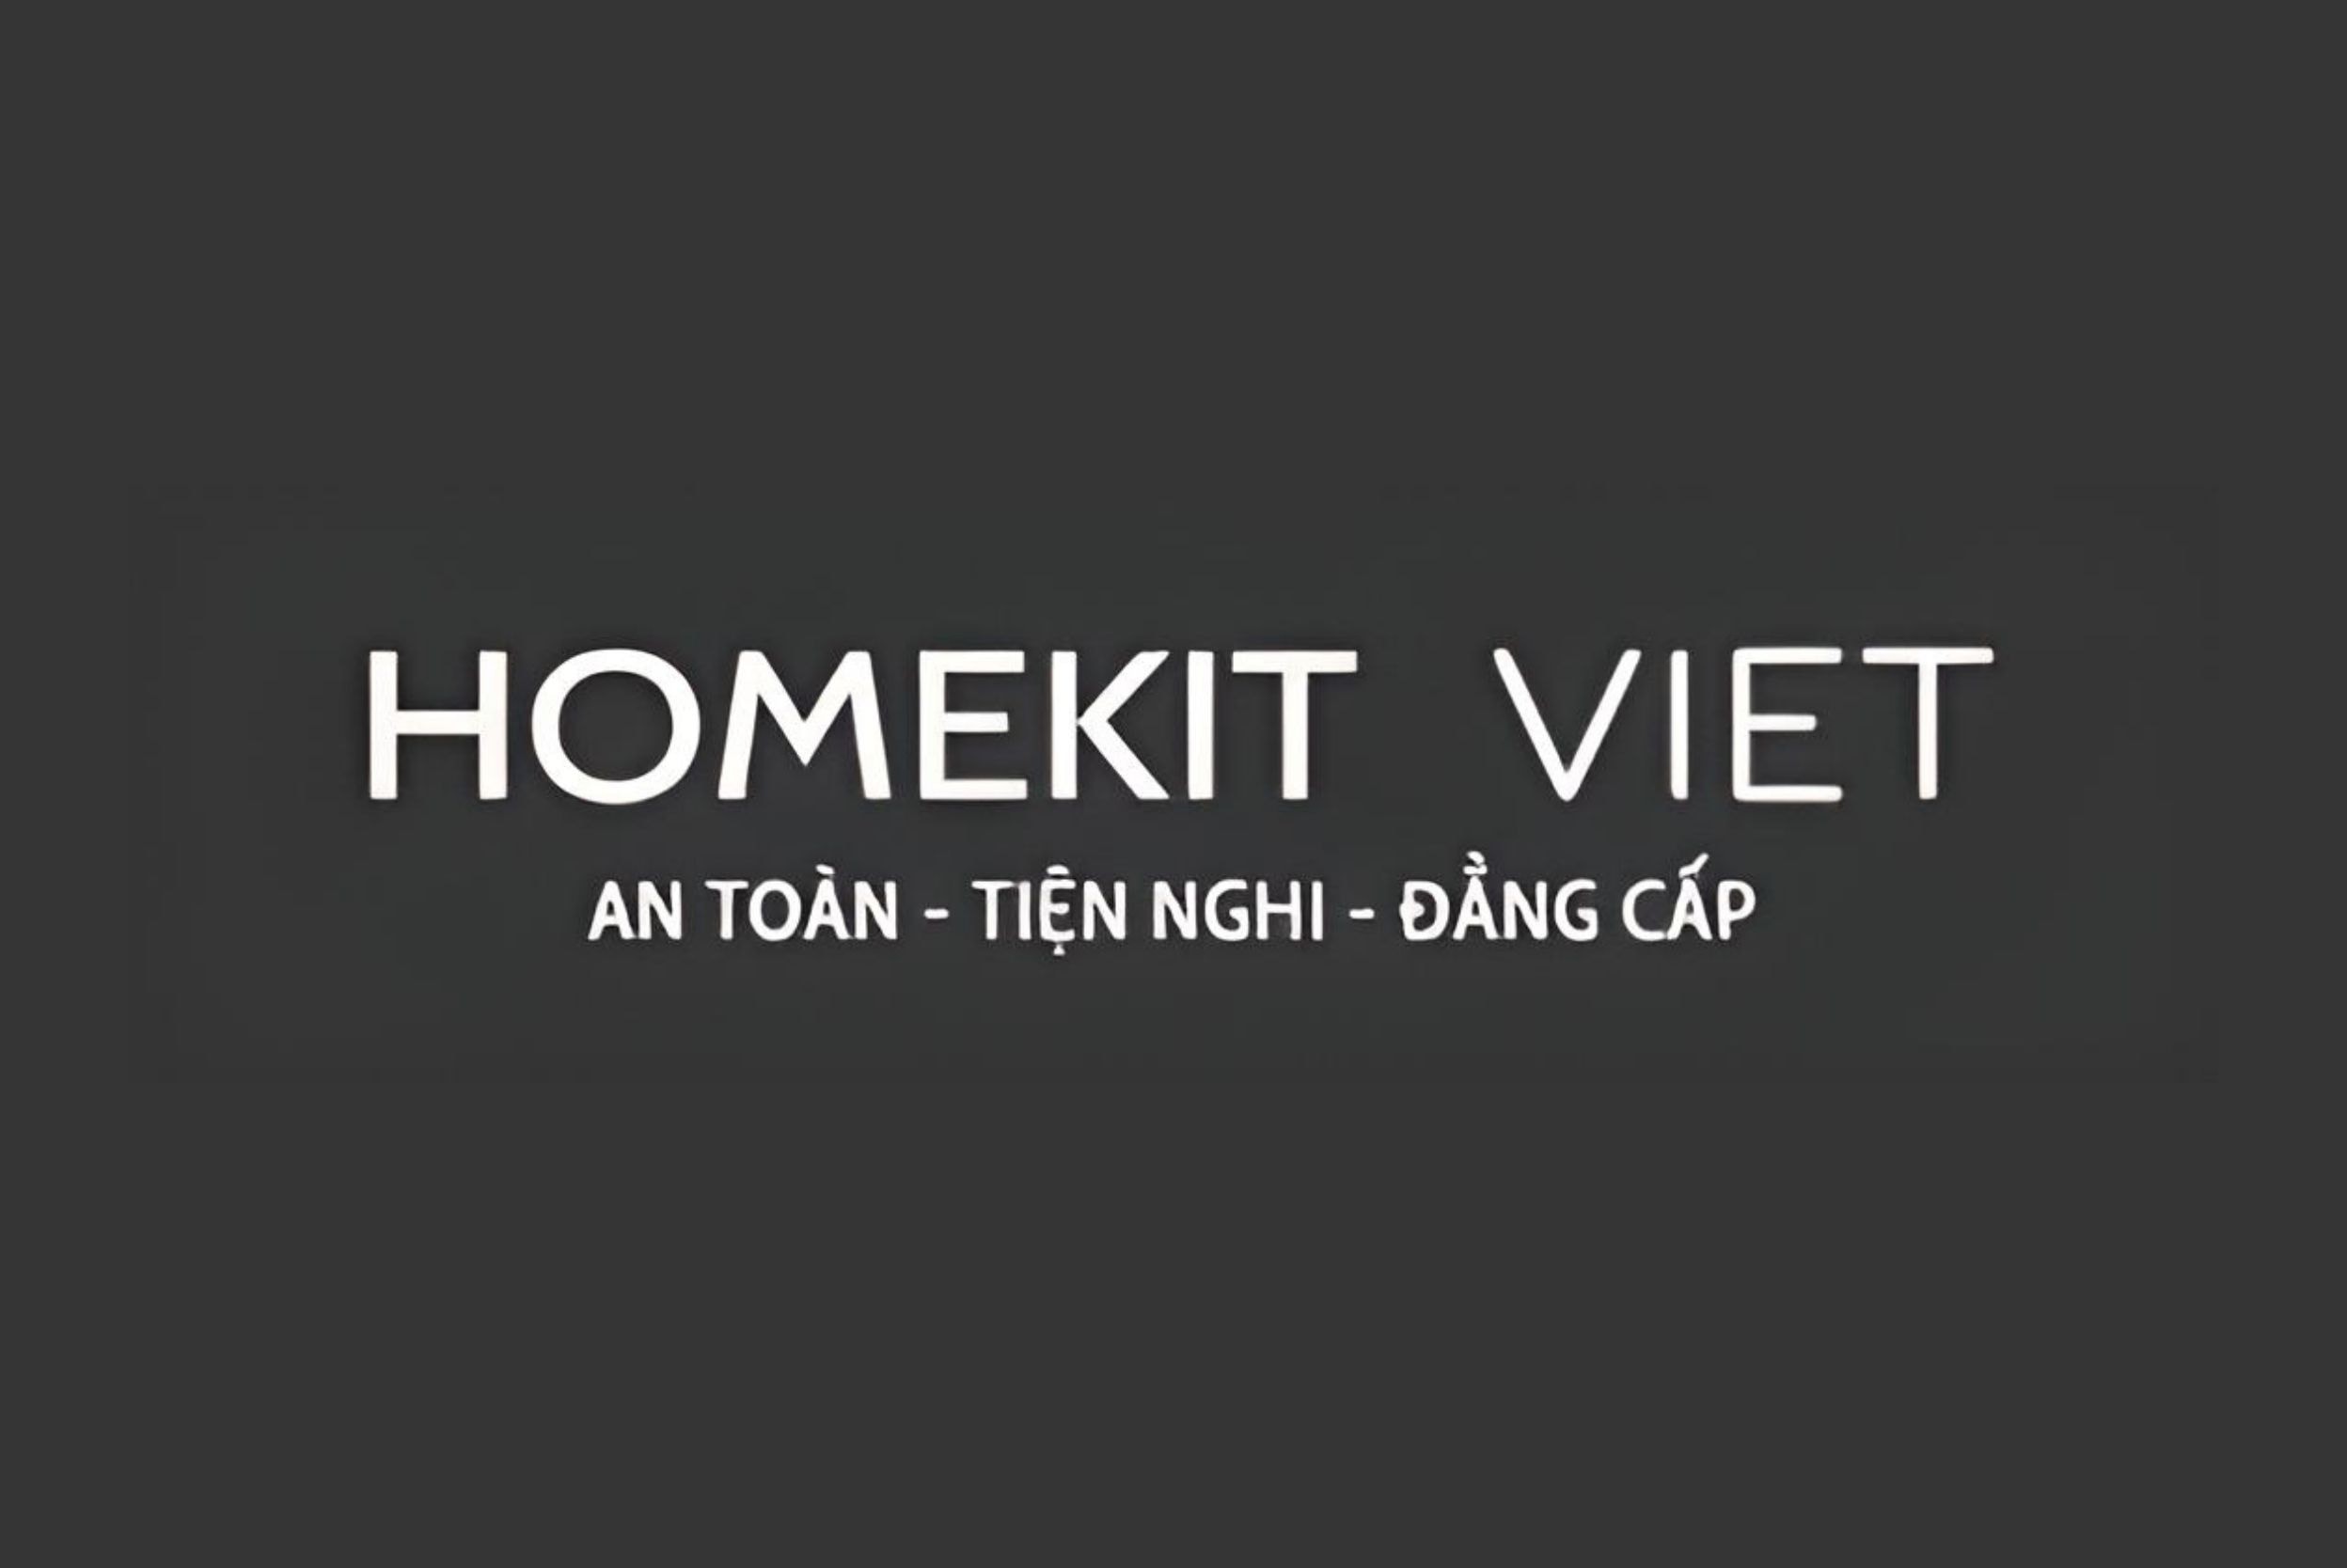 homekit-viet-logo